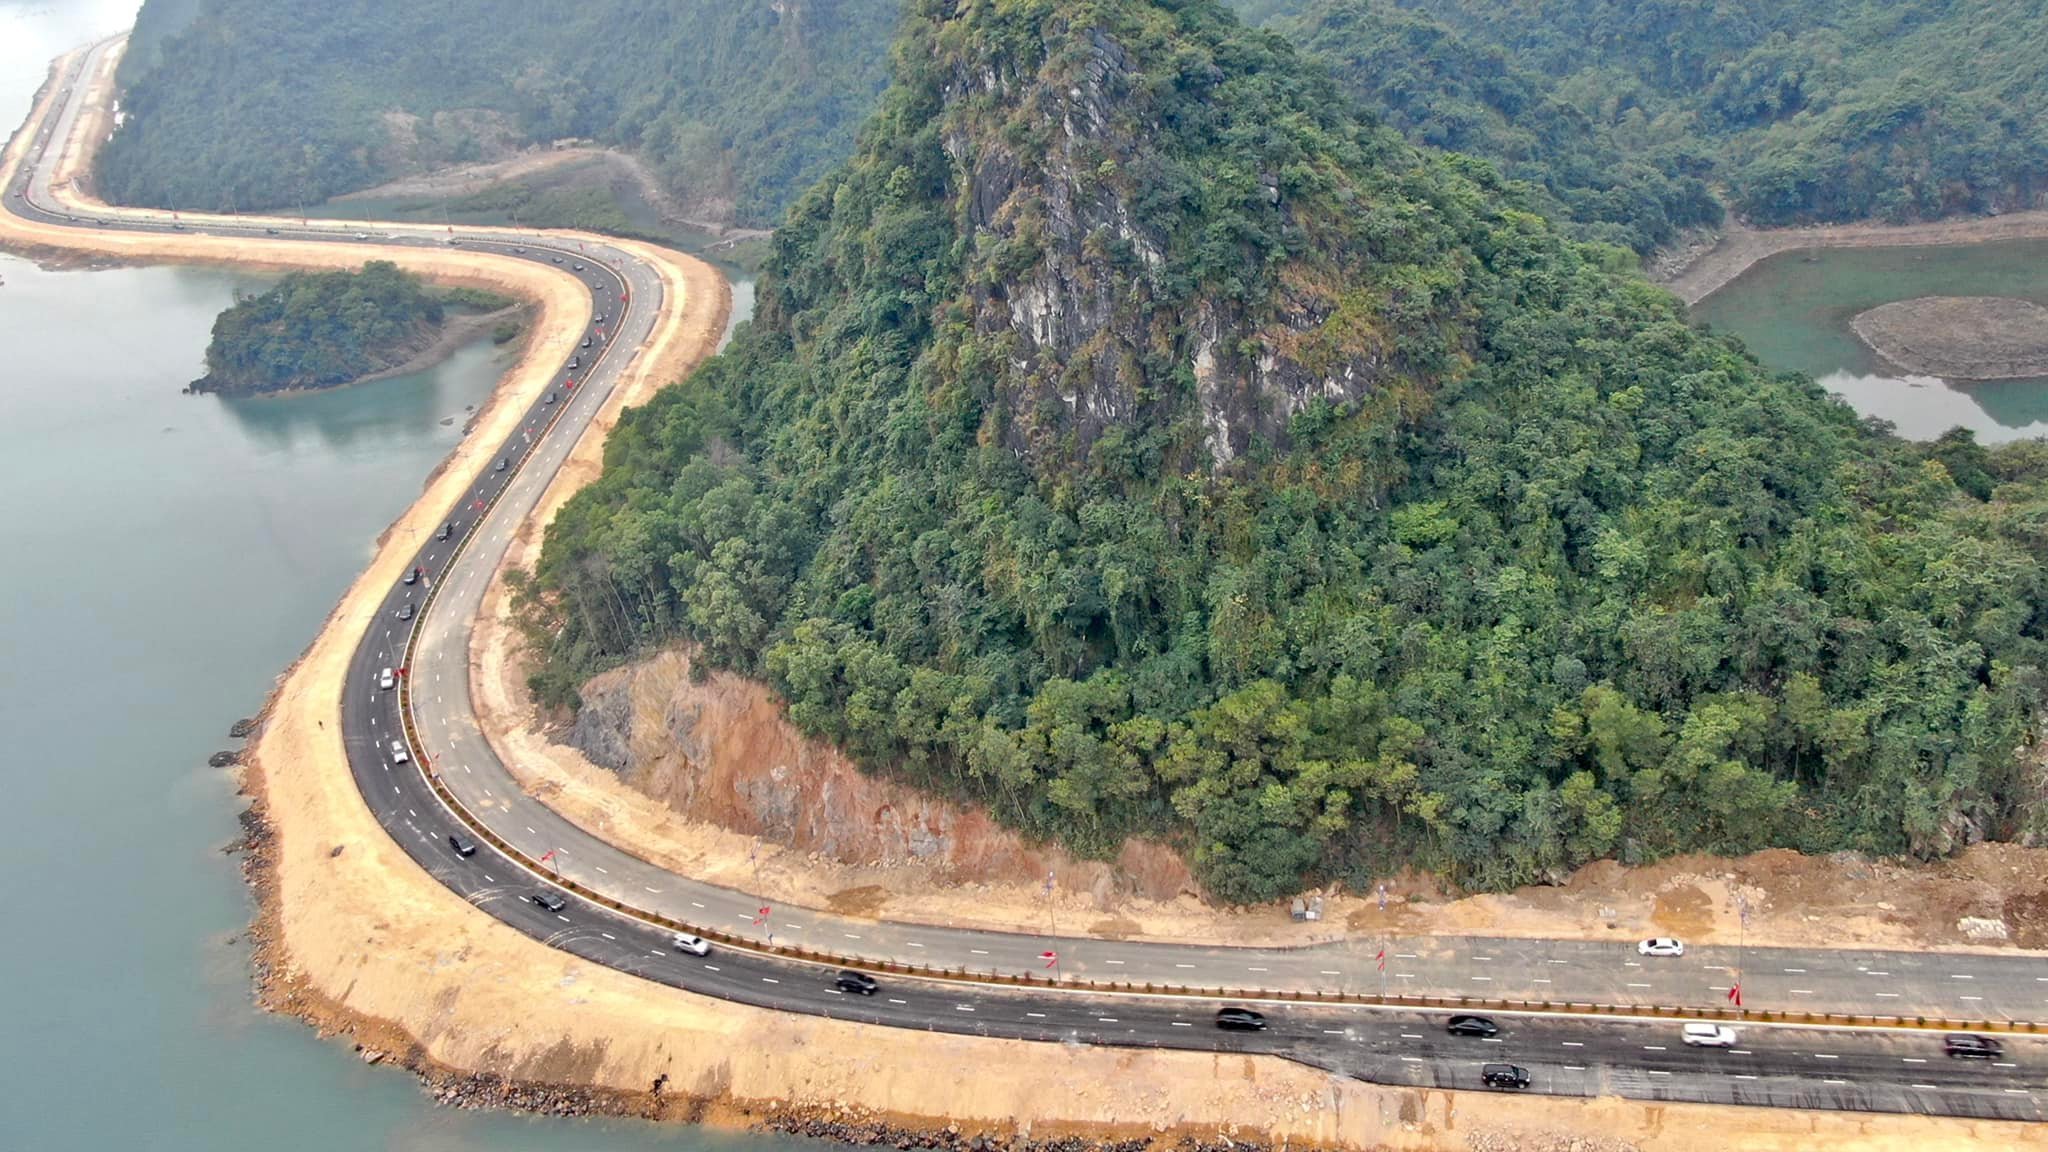 Cầu Tình Yêu và đường bao biển Hạ Long - Cẩm Phả được đưa vào khai thác